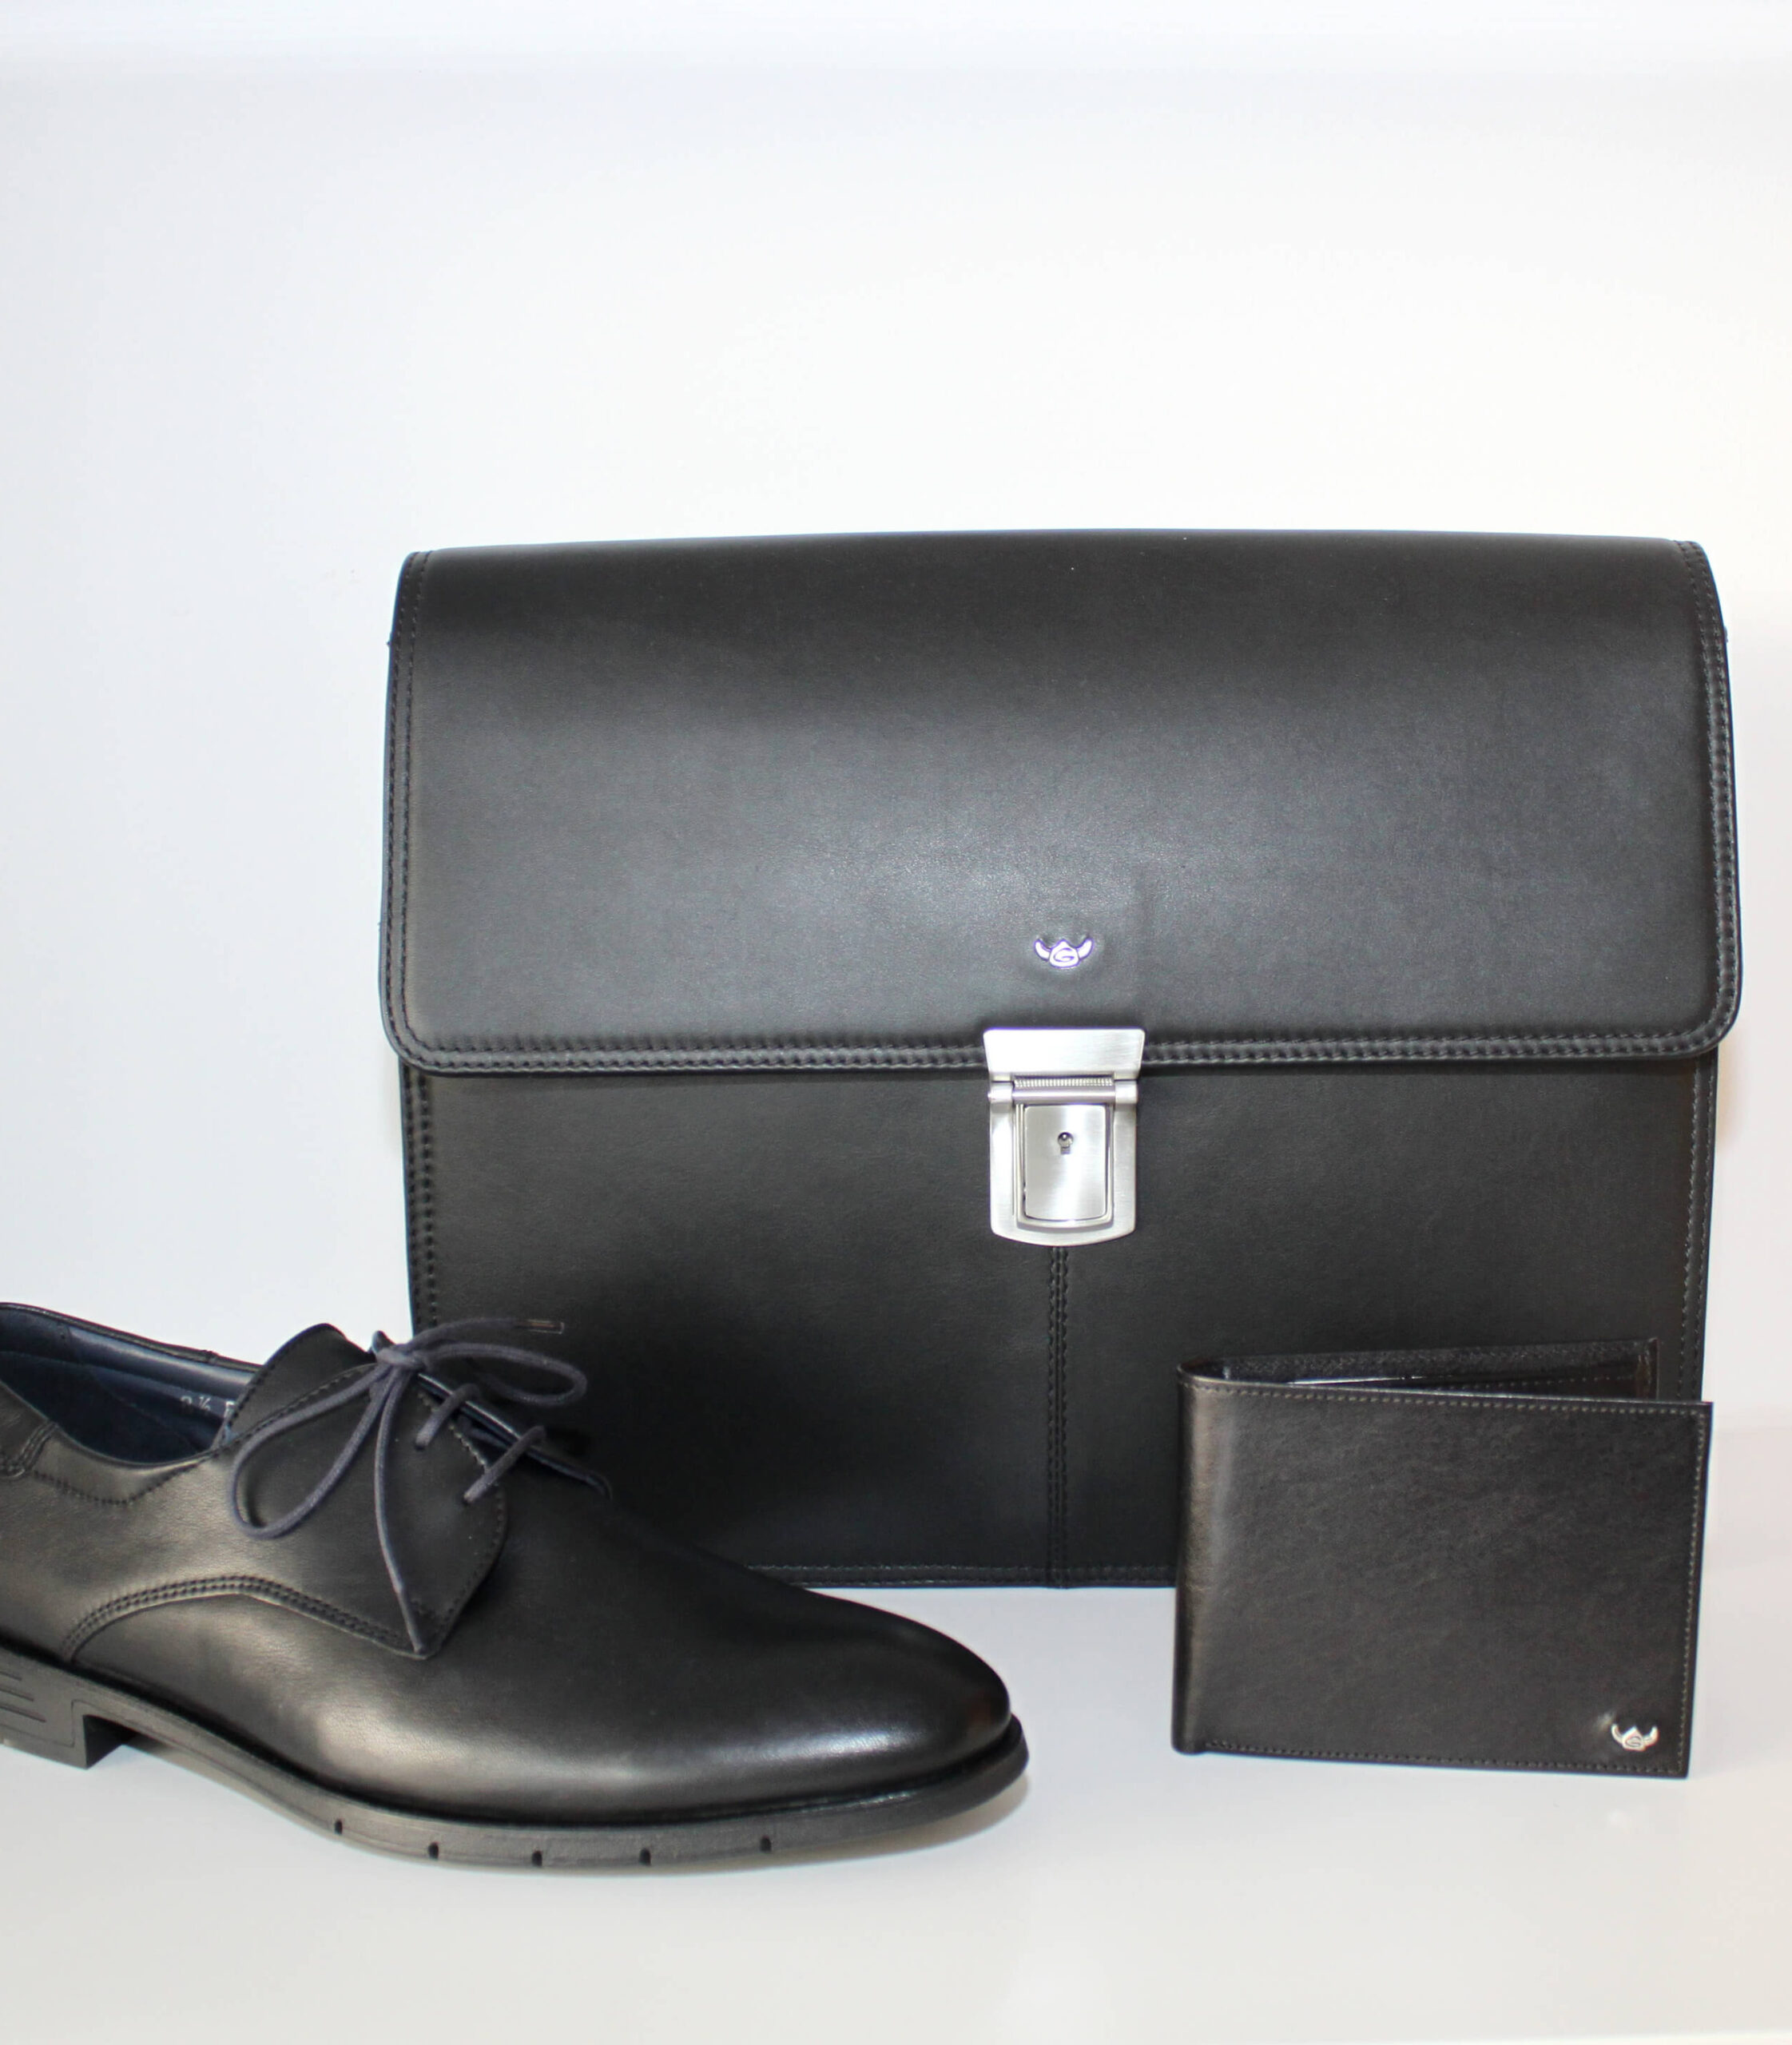 Schwarze Leder Tasche steht im Hintergrund und davor ein schwarzer Anzugsschuh und eine Brieftasche